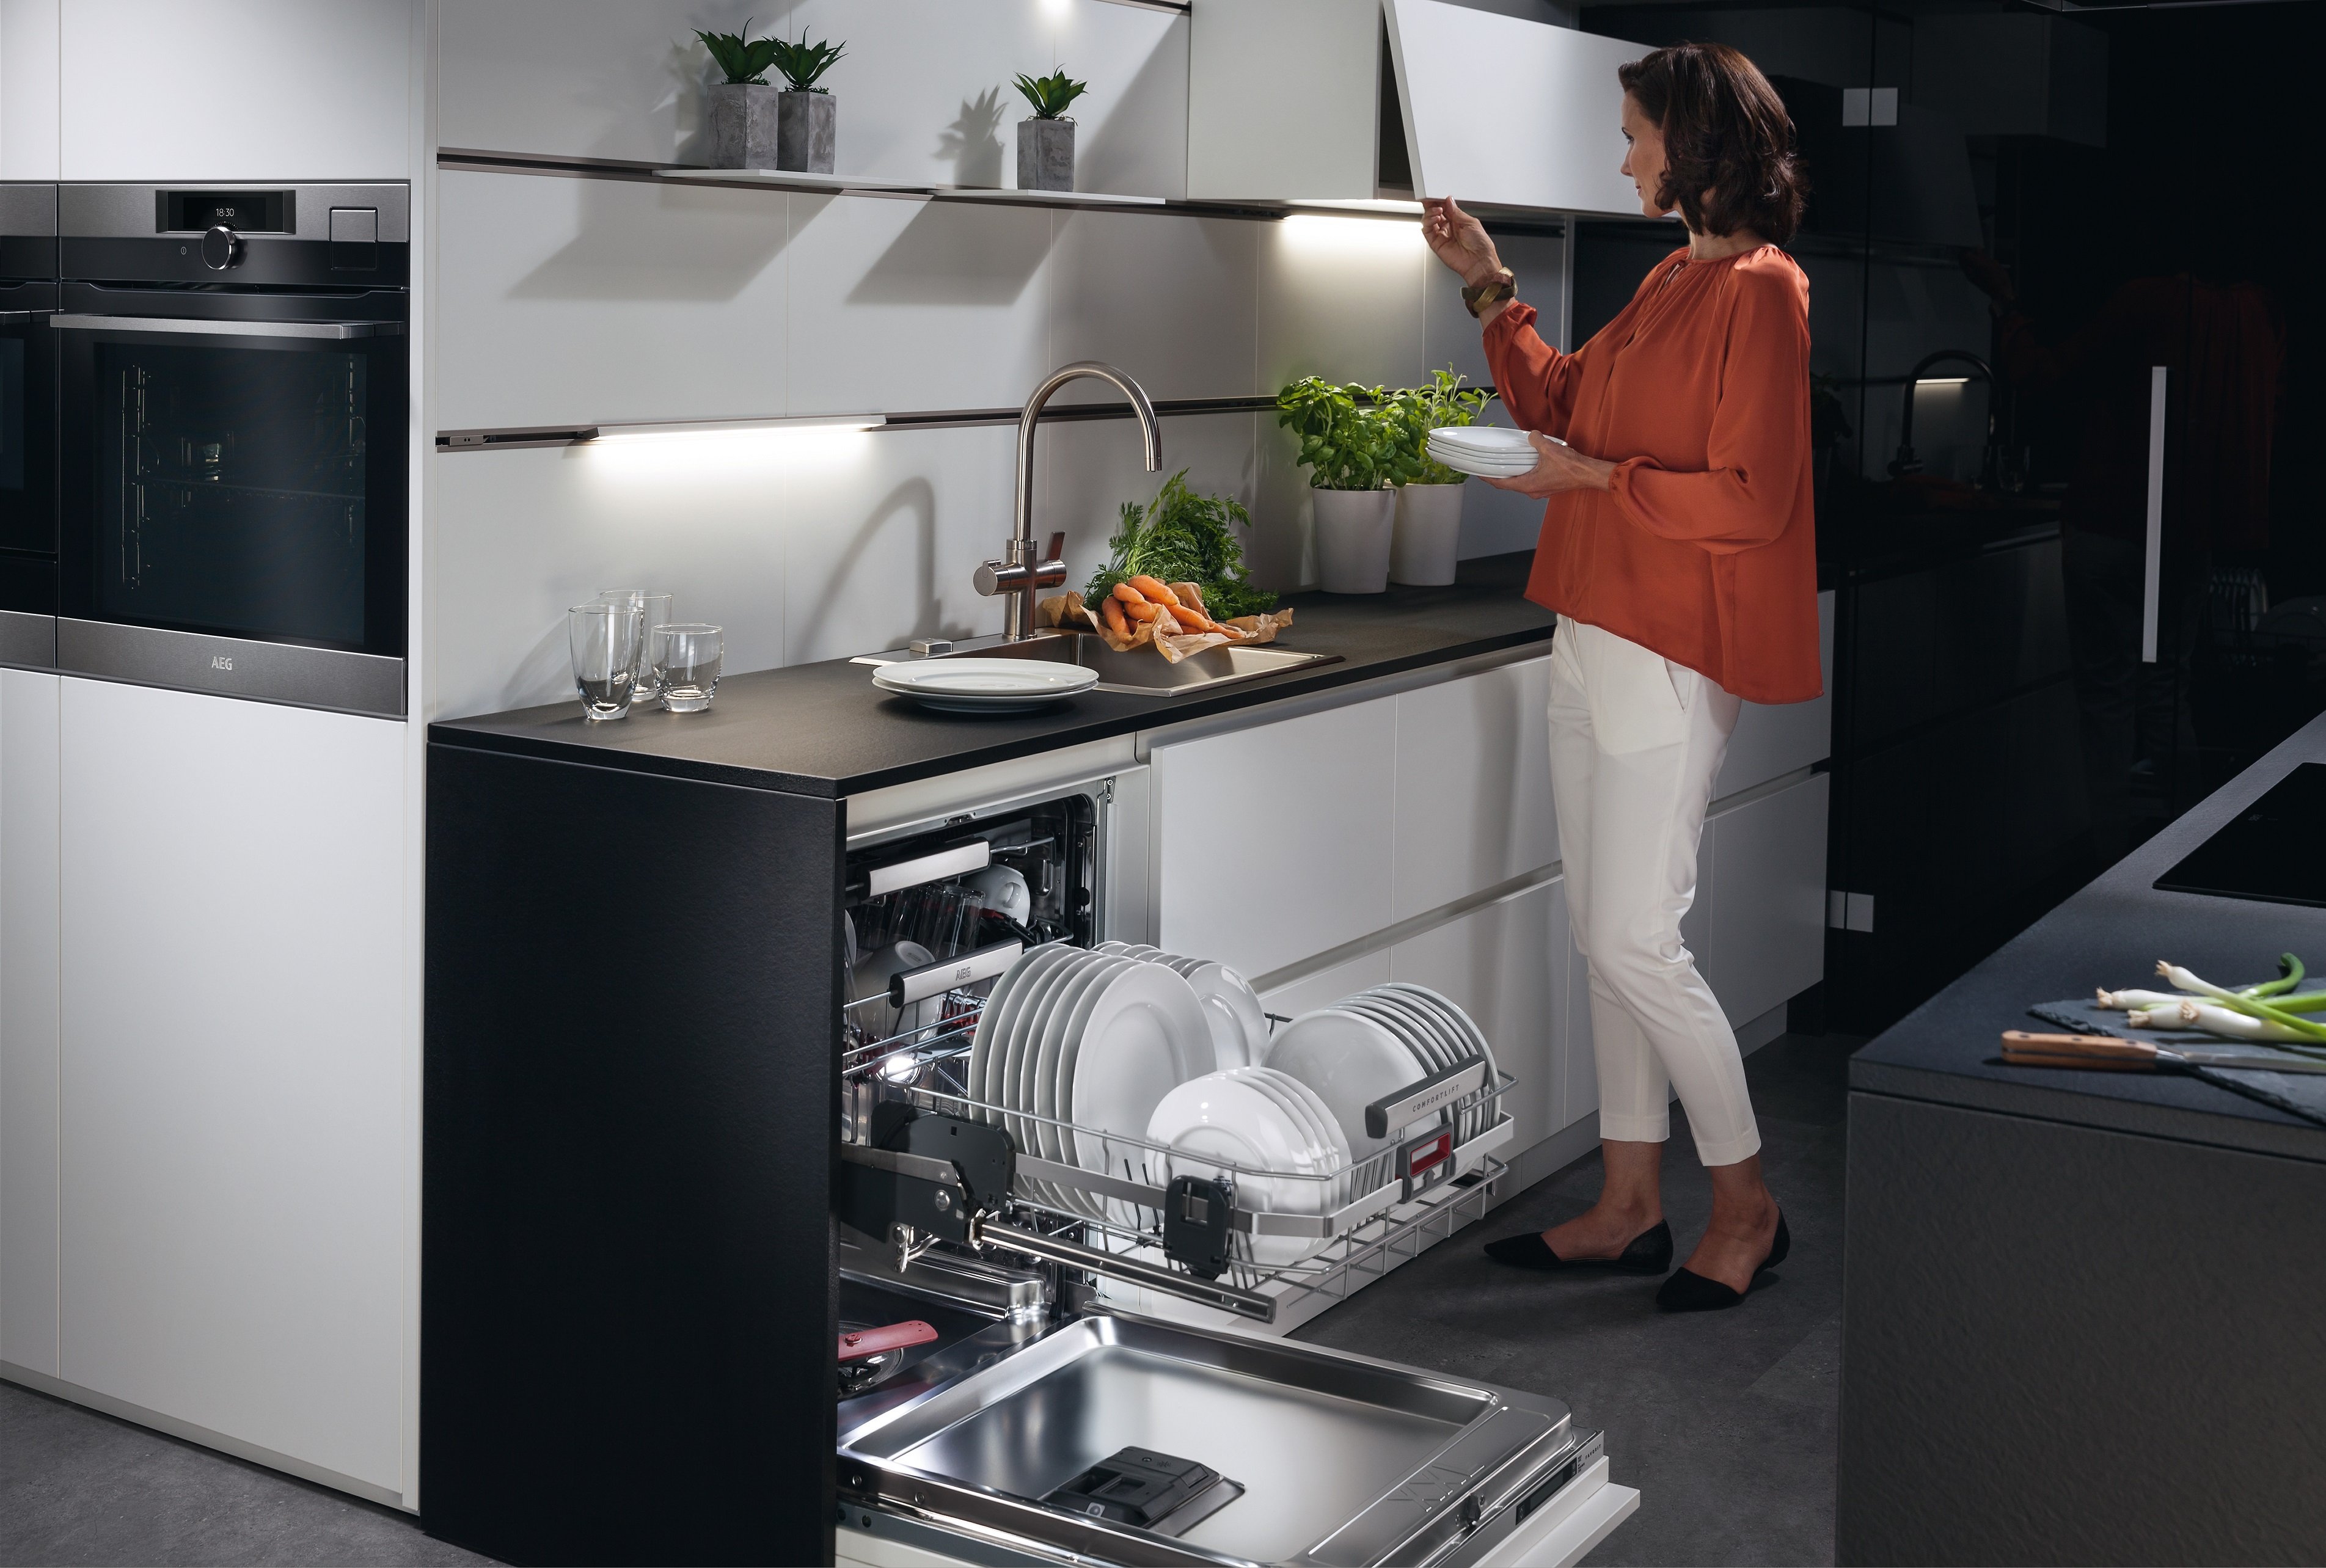 Сравнить посудомоечные машины. Посудомойка Хаер 45 см встраиваемая. Встраиваемая посудомоечная машина Ханса. Посудомоечная машина AEG FSR 93800 P. Посудомоечная машина 45 см встраиваемая с бутылочницей.